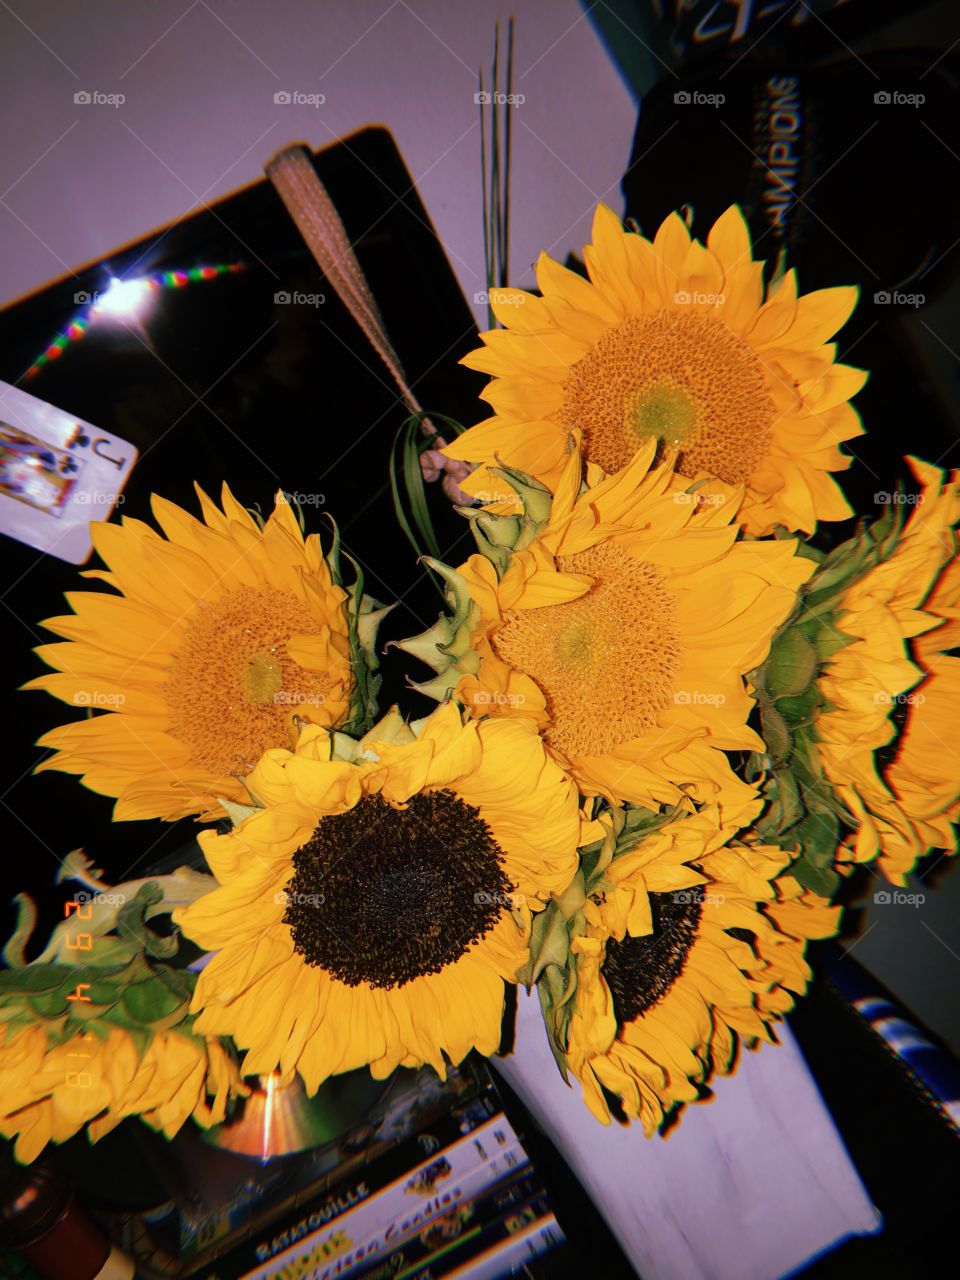 Bright yellow sunflowers I got to cheer myself up one day